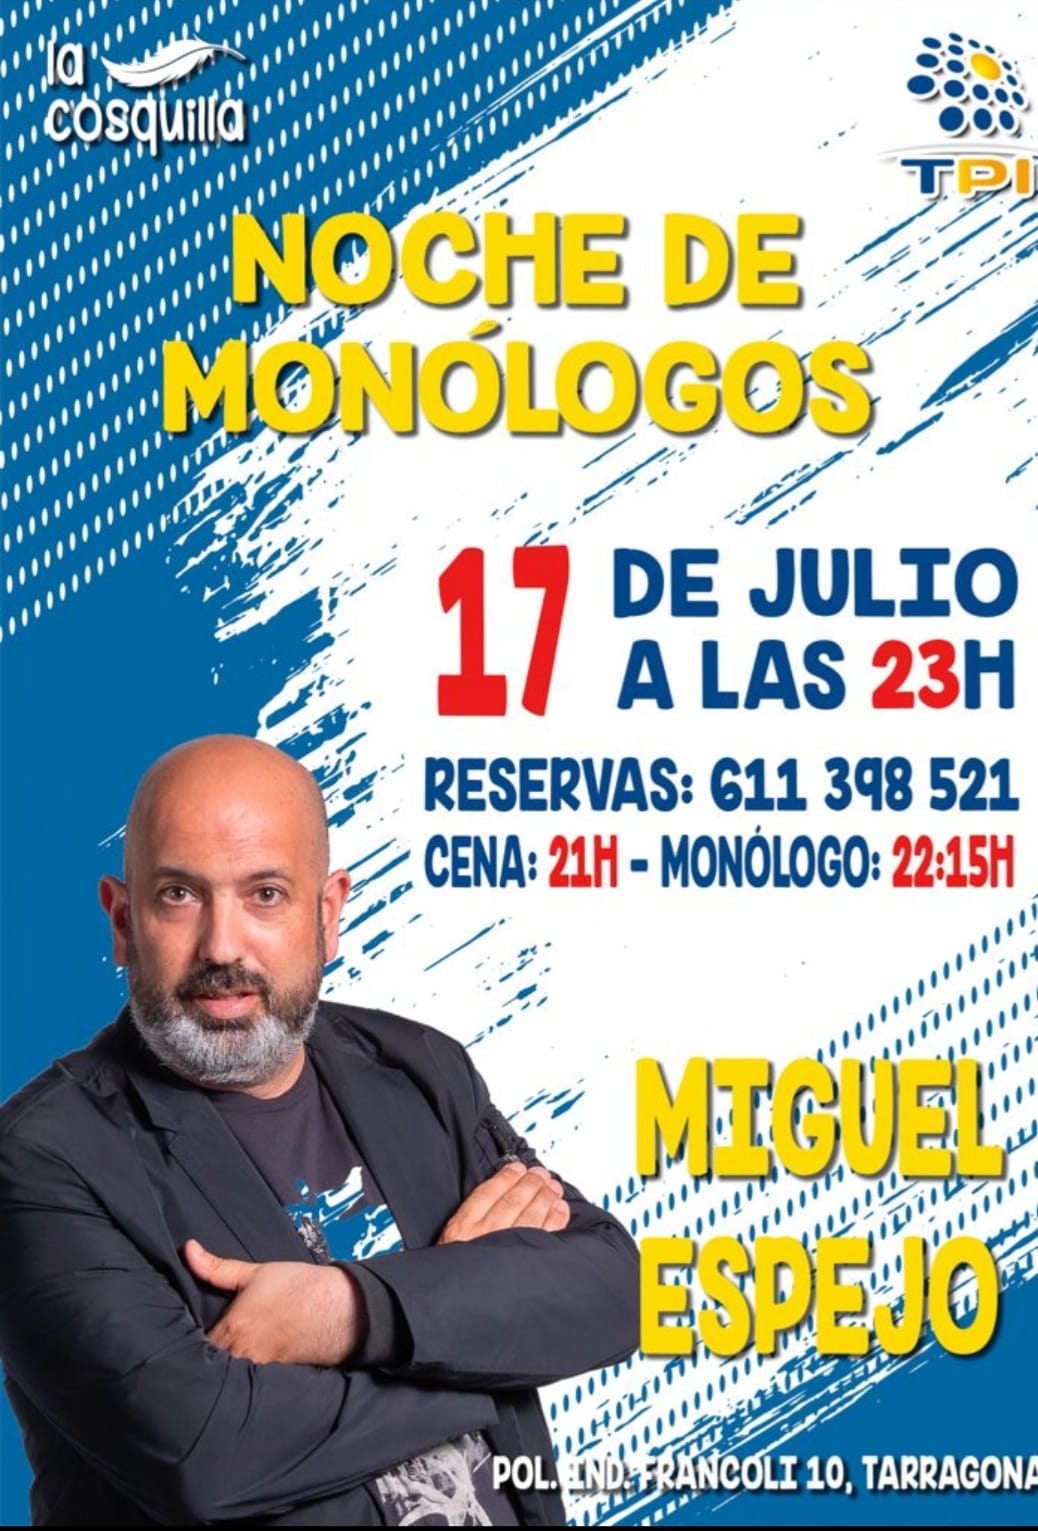 NOCHE DE MONOLOGOS EN EL BAR RESTAURANTE TPI